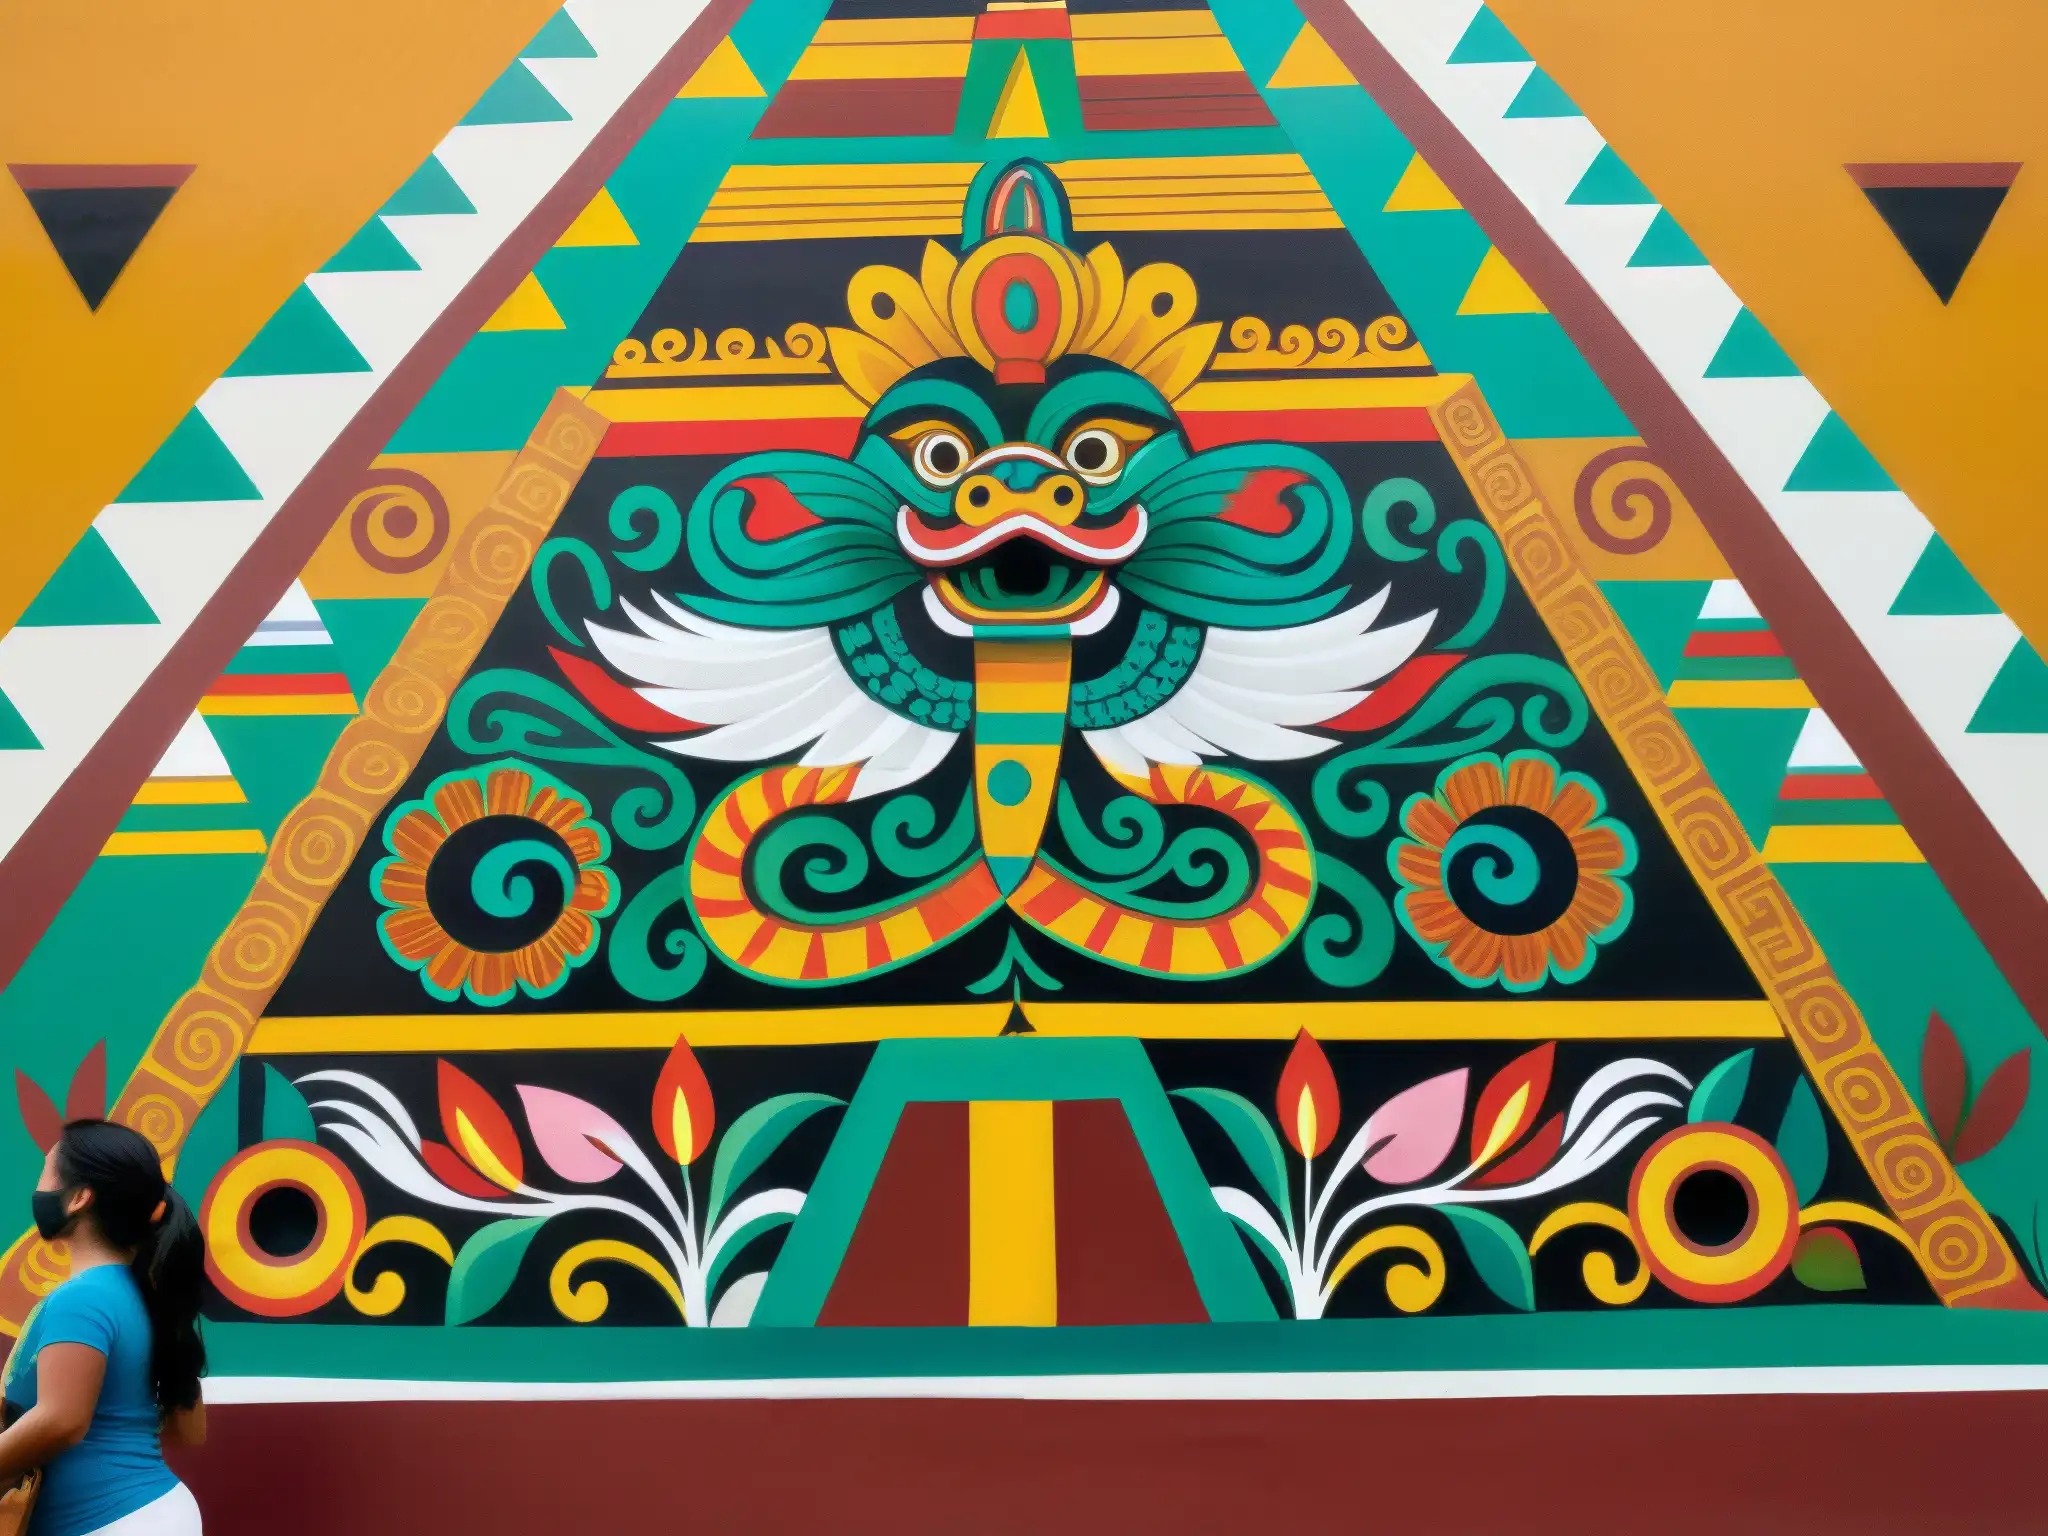 Quetzalcóatl, mito y leyenda de la cultura mexicana, representado en un detallado mural con colores vibrantes y patrones intrincados, evocando la rica herencia cultural de México